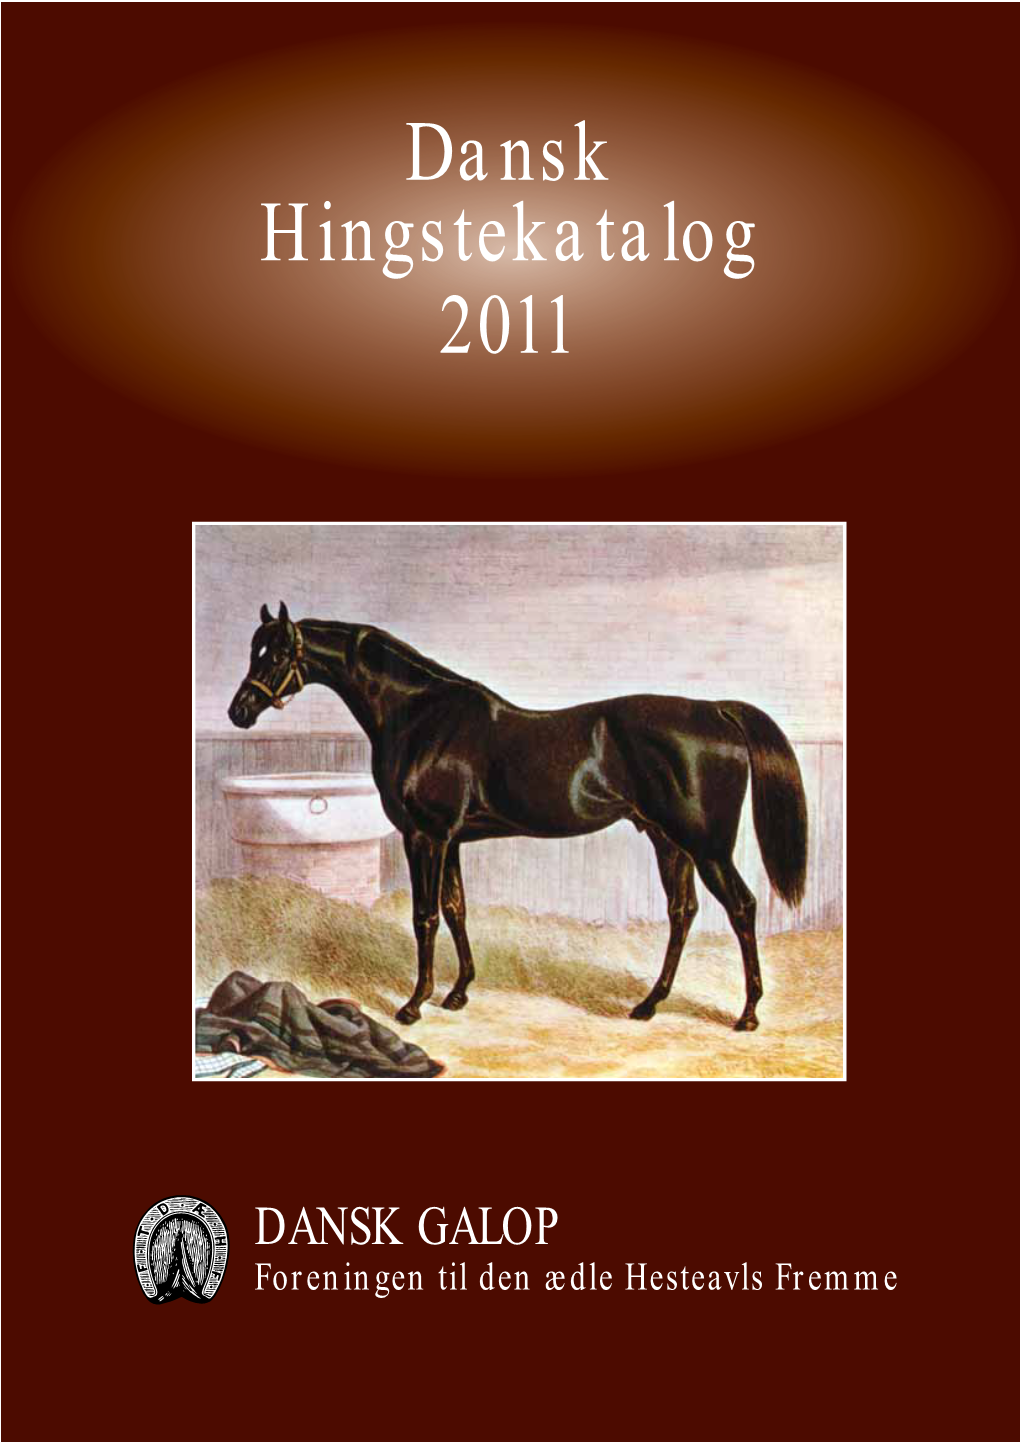 Dansk Hingstekatalog 2011